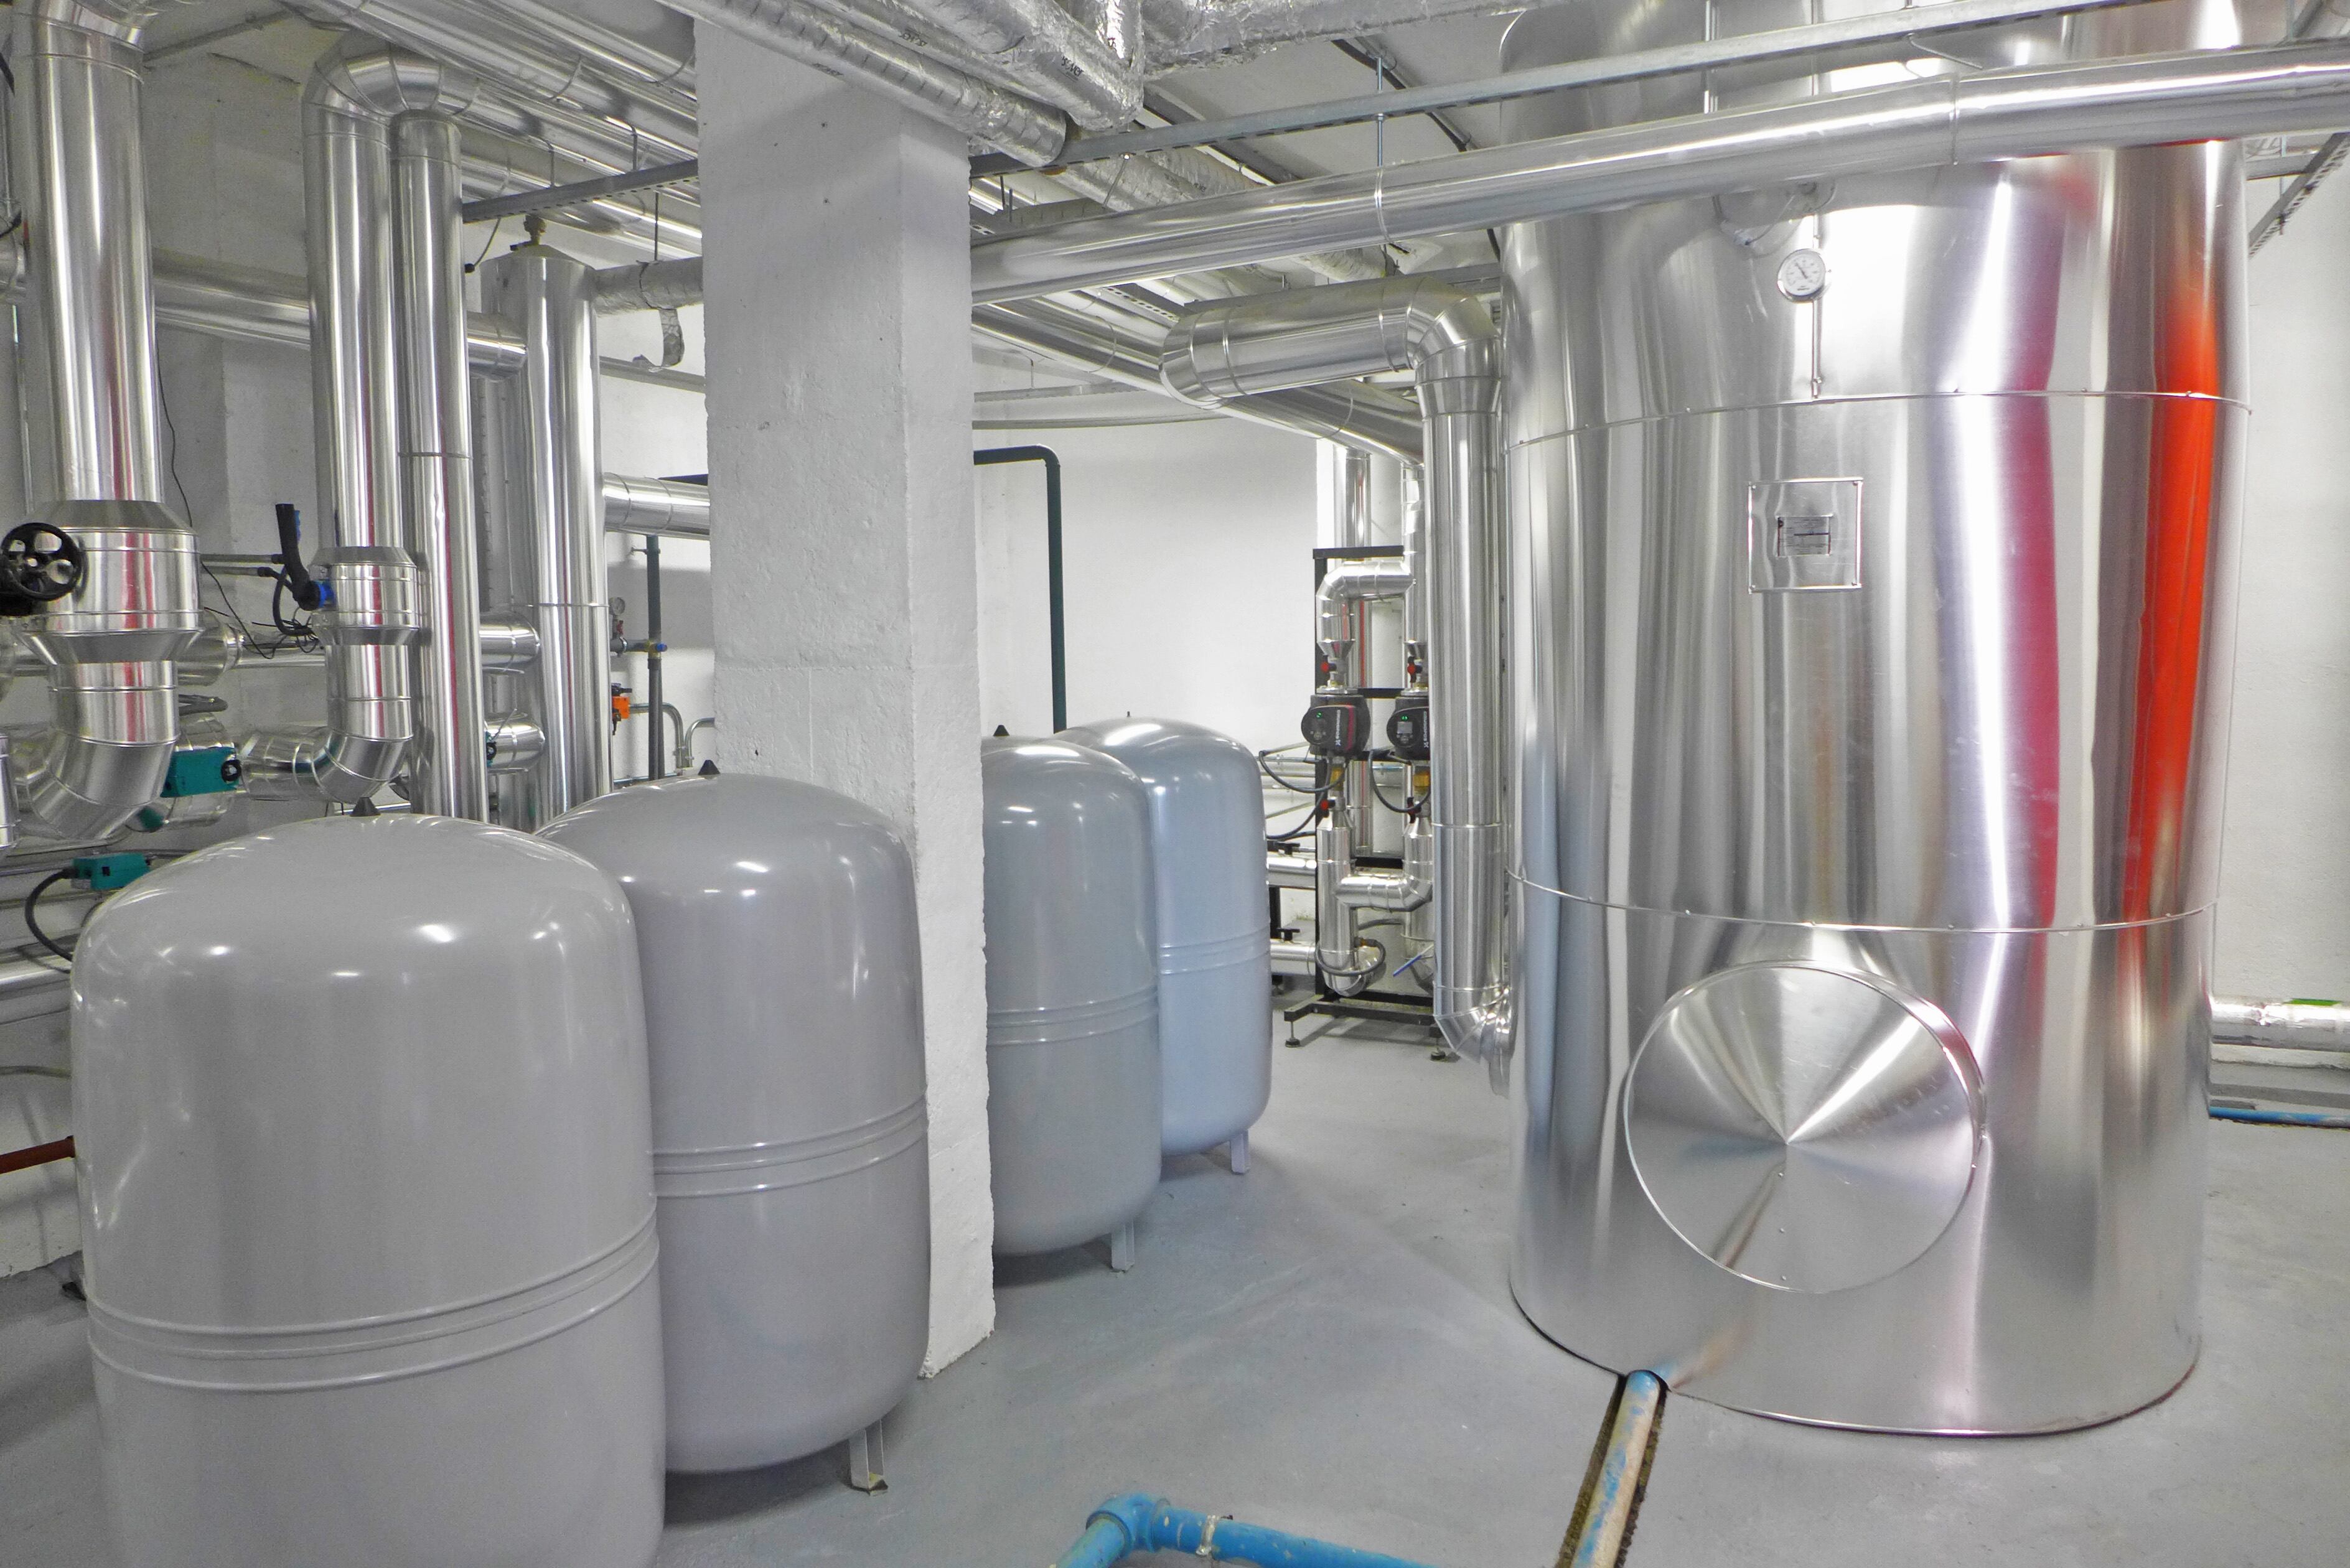 Sistema híbrido de calefacción y agua caliente sanitaria en una mancomunidad en Alcorcón que ha sido la primera en emitir CAE.